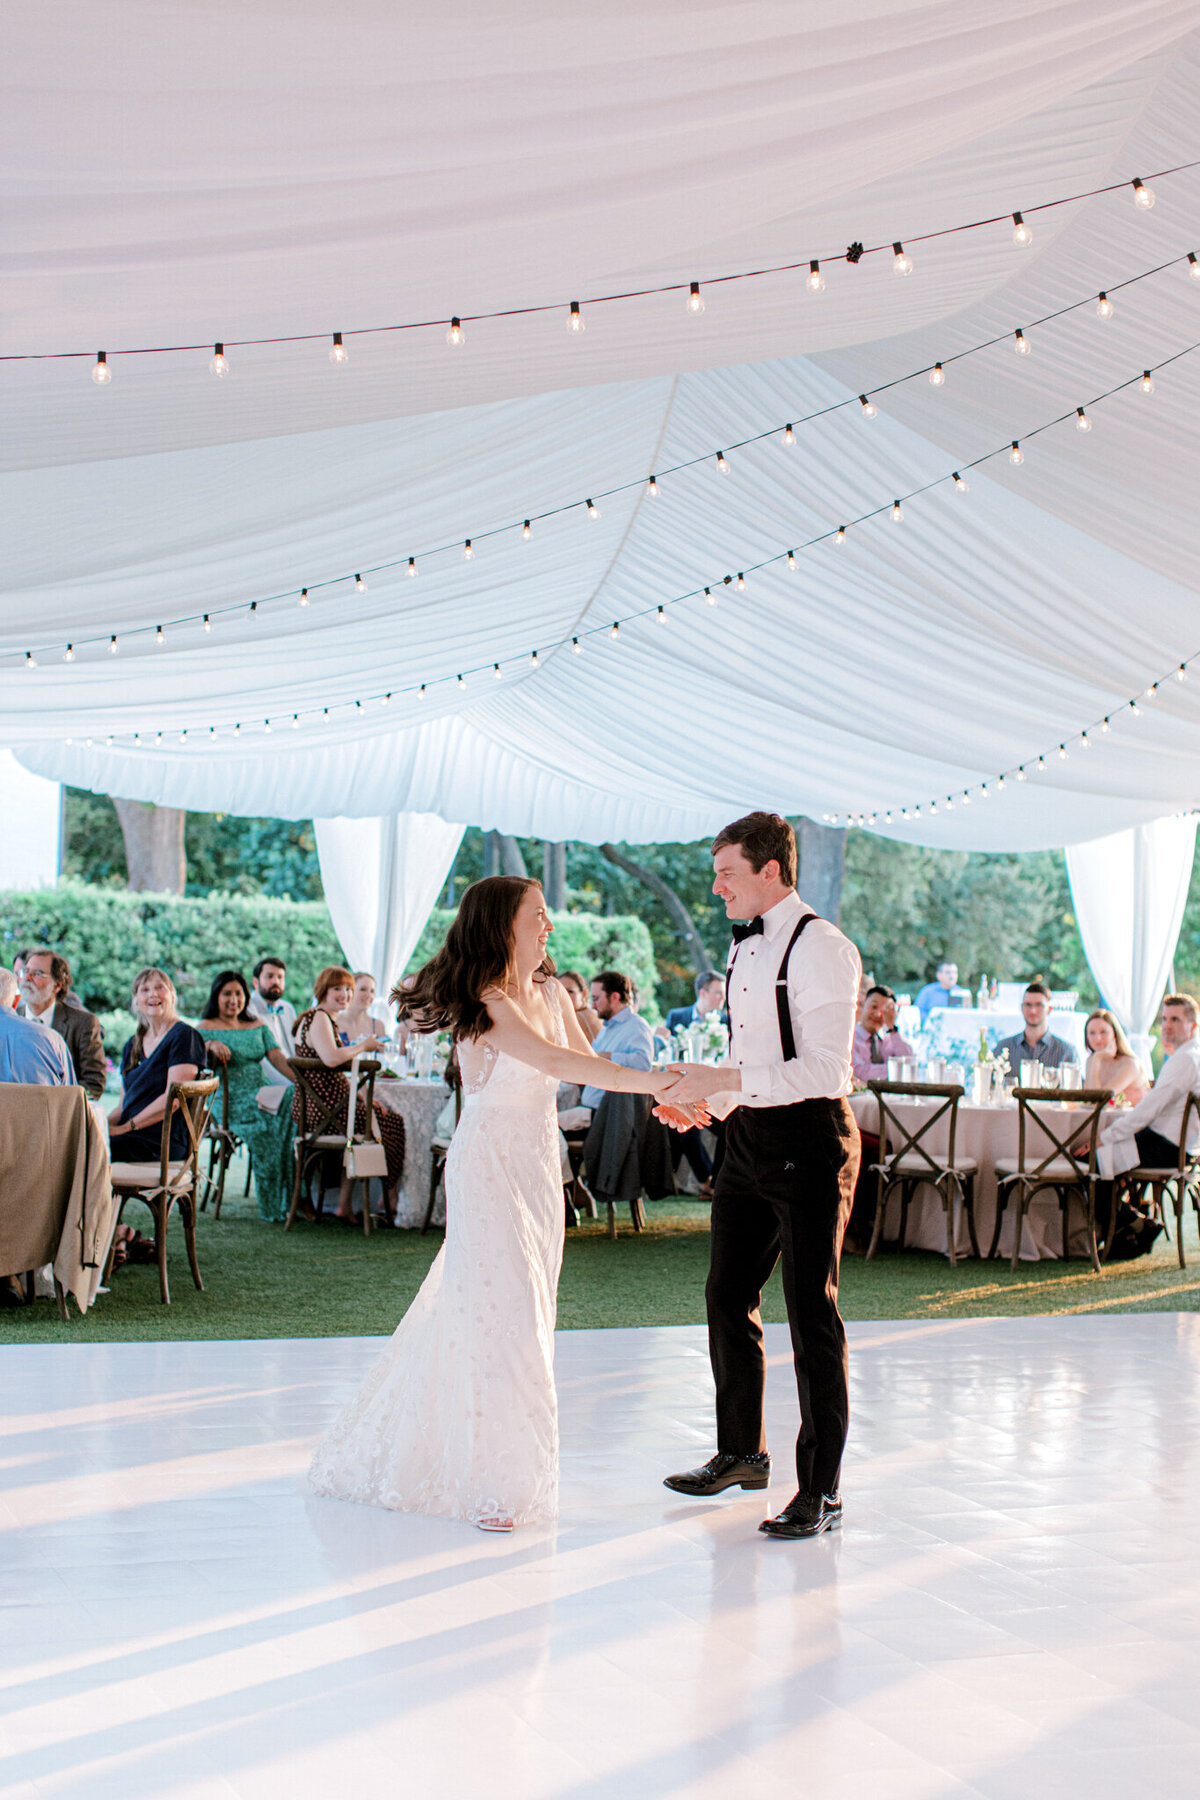 Gena & Matt's Wedding at the Dallas Arboretum | Dallas Wedding Photographer | Sami Kathryn Photography-240